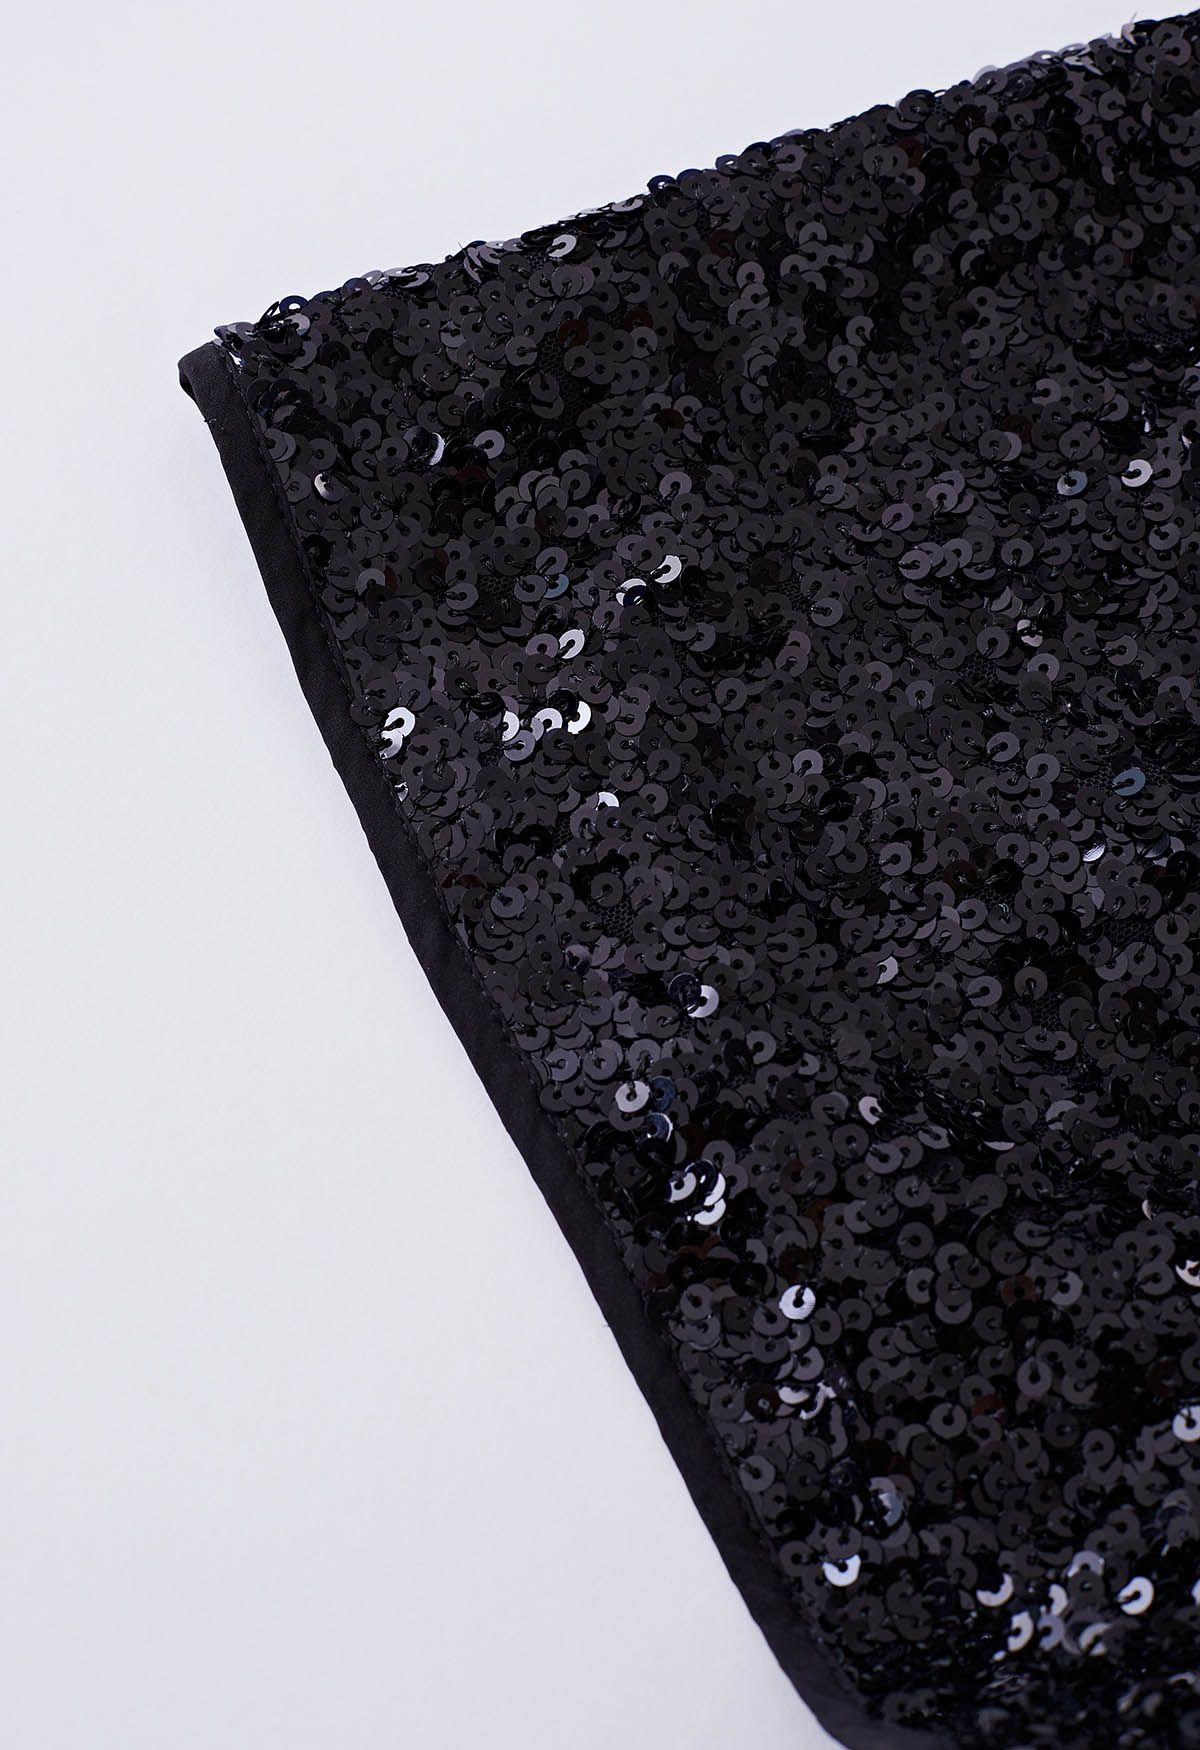 Full Sequins Embellished Shorts in Black